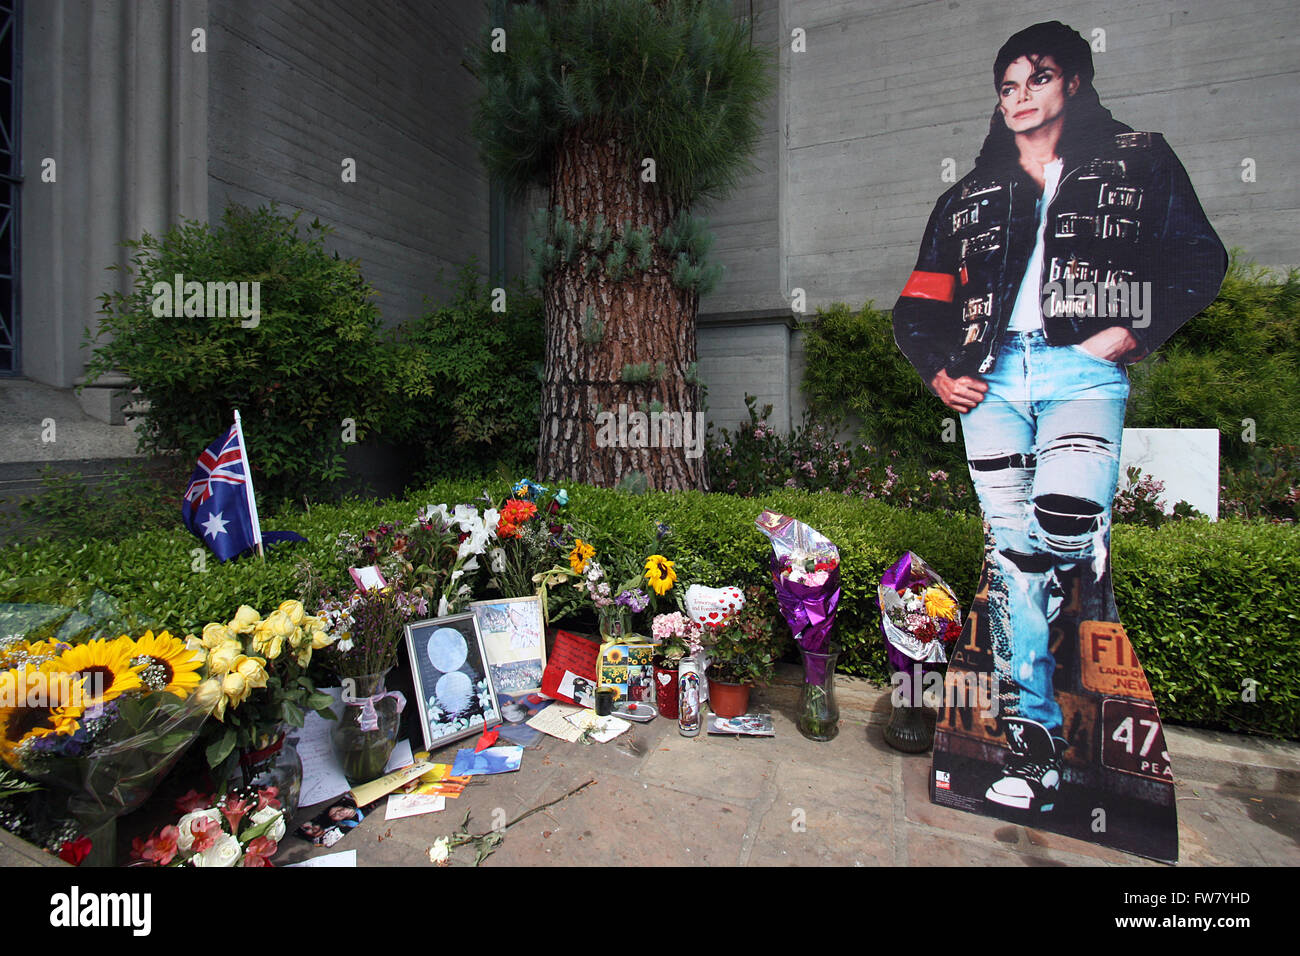 Letzte Ruhestätten - Forest Lawn Memorial Park & Leichenhallen Berühmtheit: das Grab von Michael Jackson am großen Mausoleum.  Mitwirkende: Michael Jackson wo: Glendale, Kalifornien, Vereinigte Staaten, wenn: 1. März 2016 Stockfoto